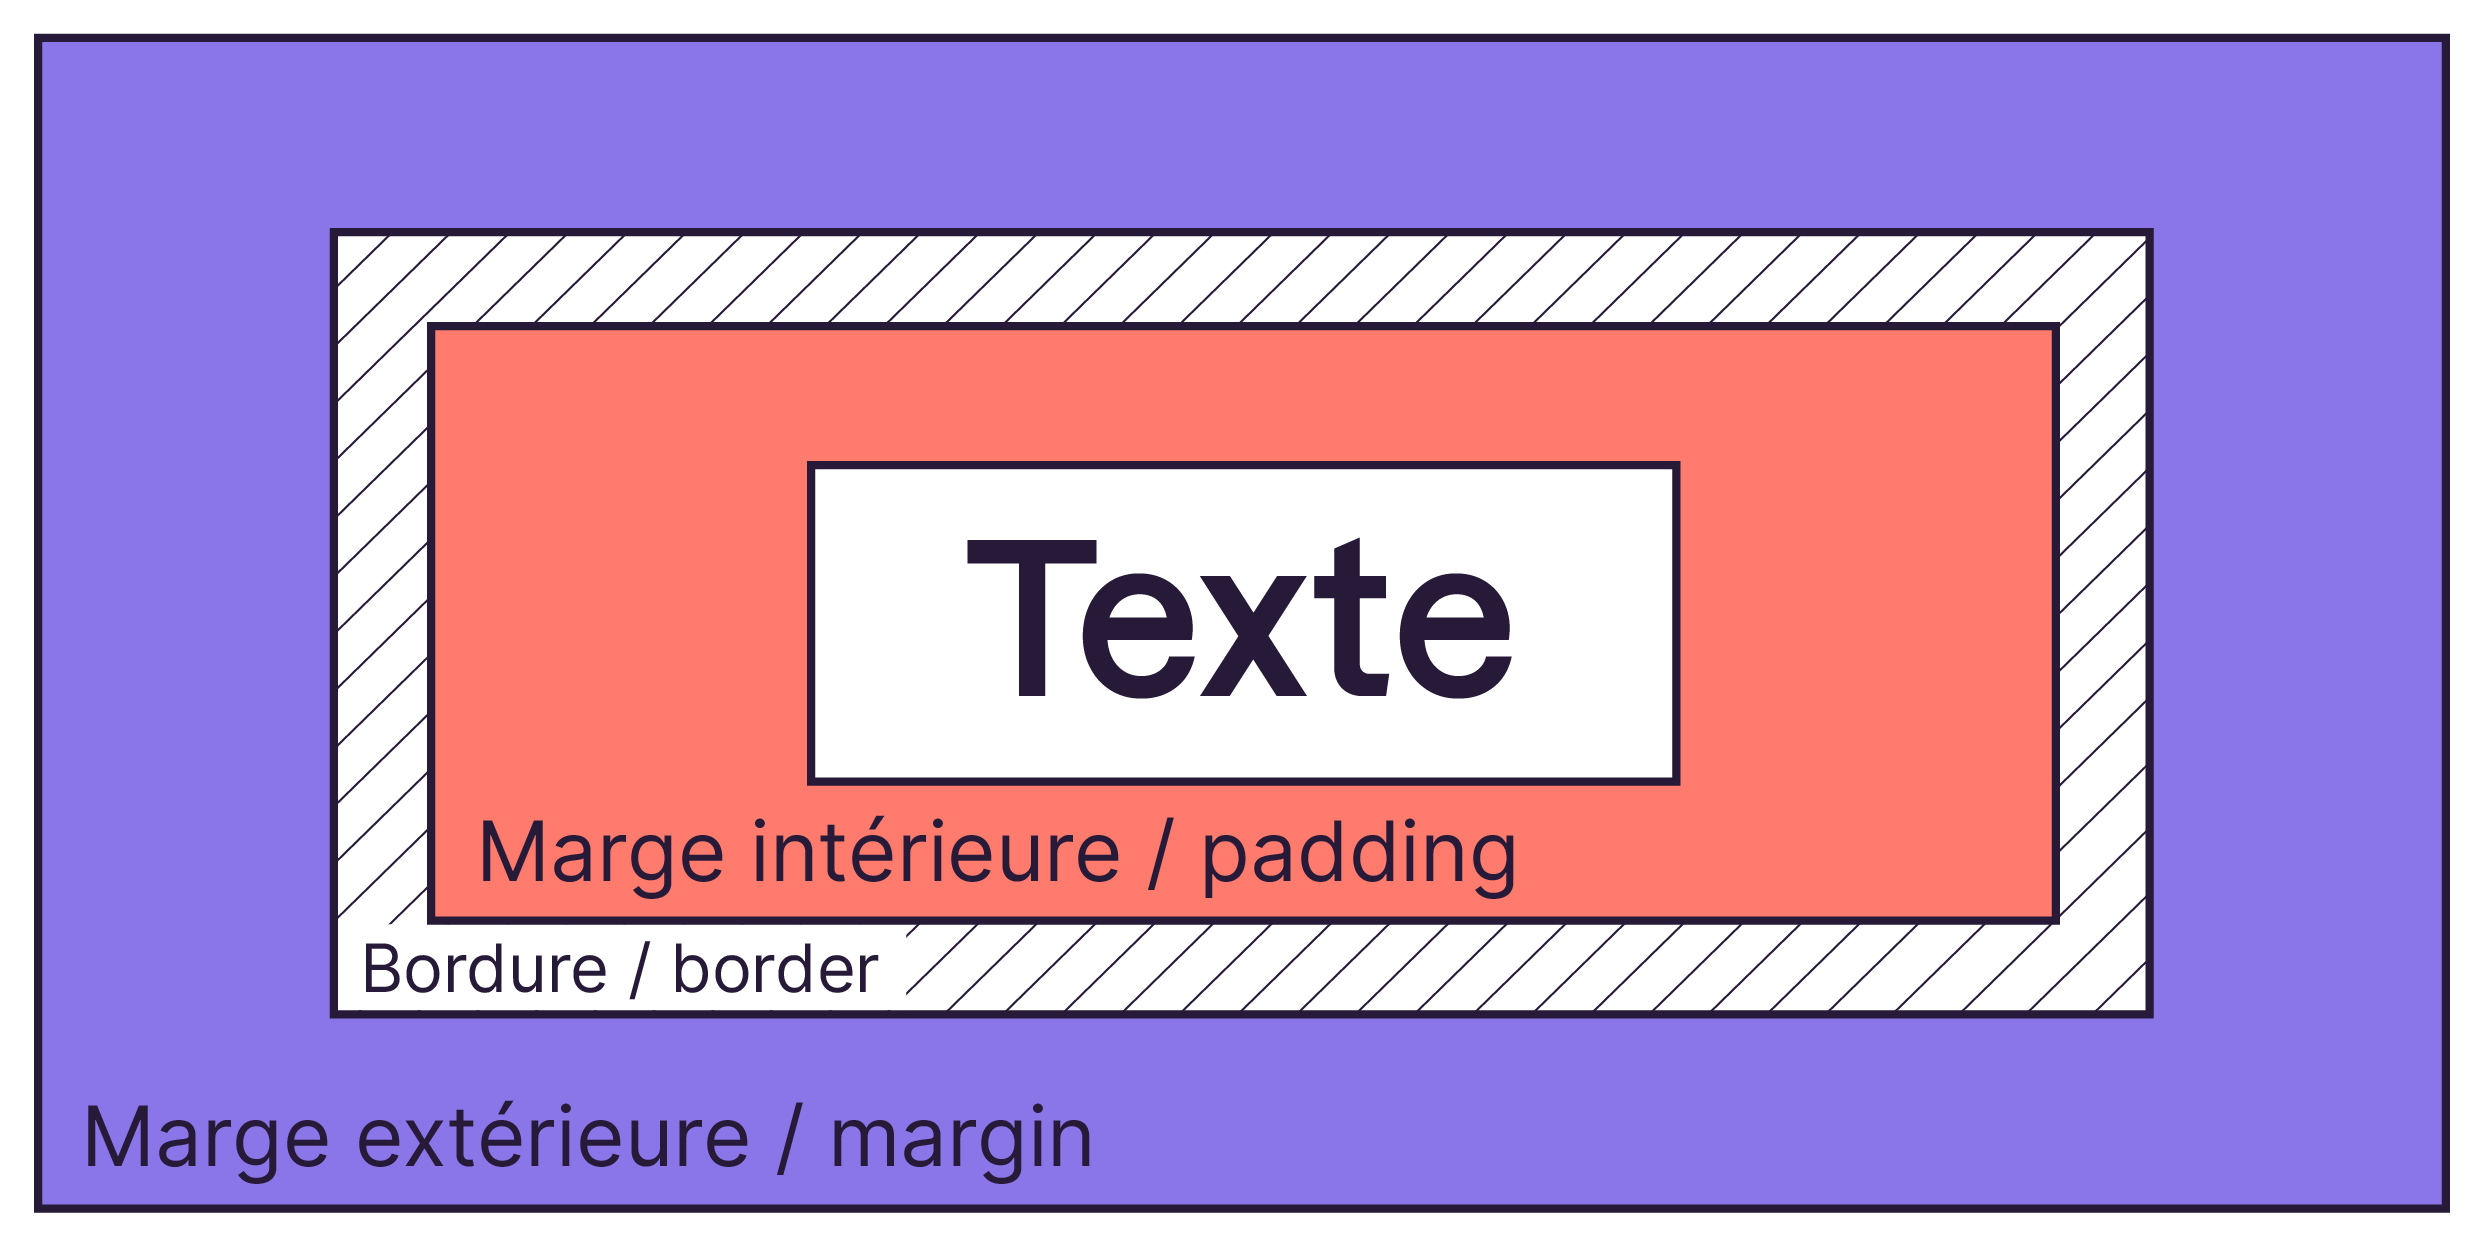 L'espace entre le texte et la bordure correspond à la marge intérieure. L'espace entre la bordure et le bloc suivant est la marge extérieure.